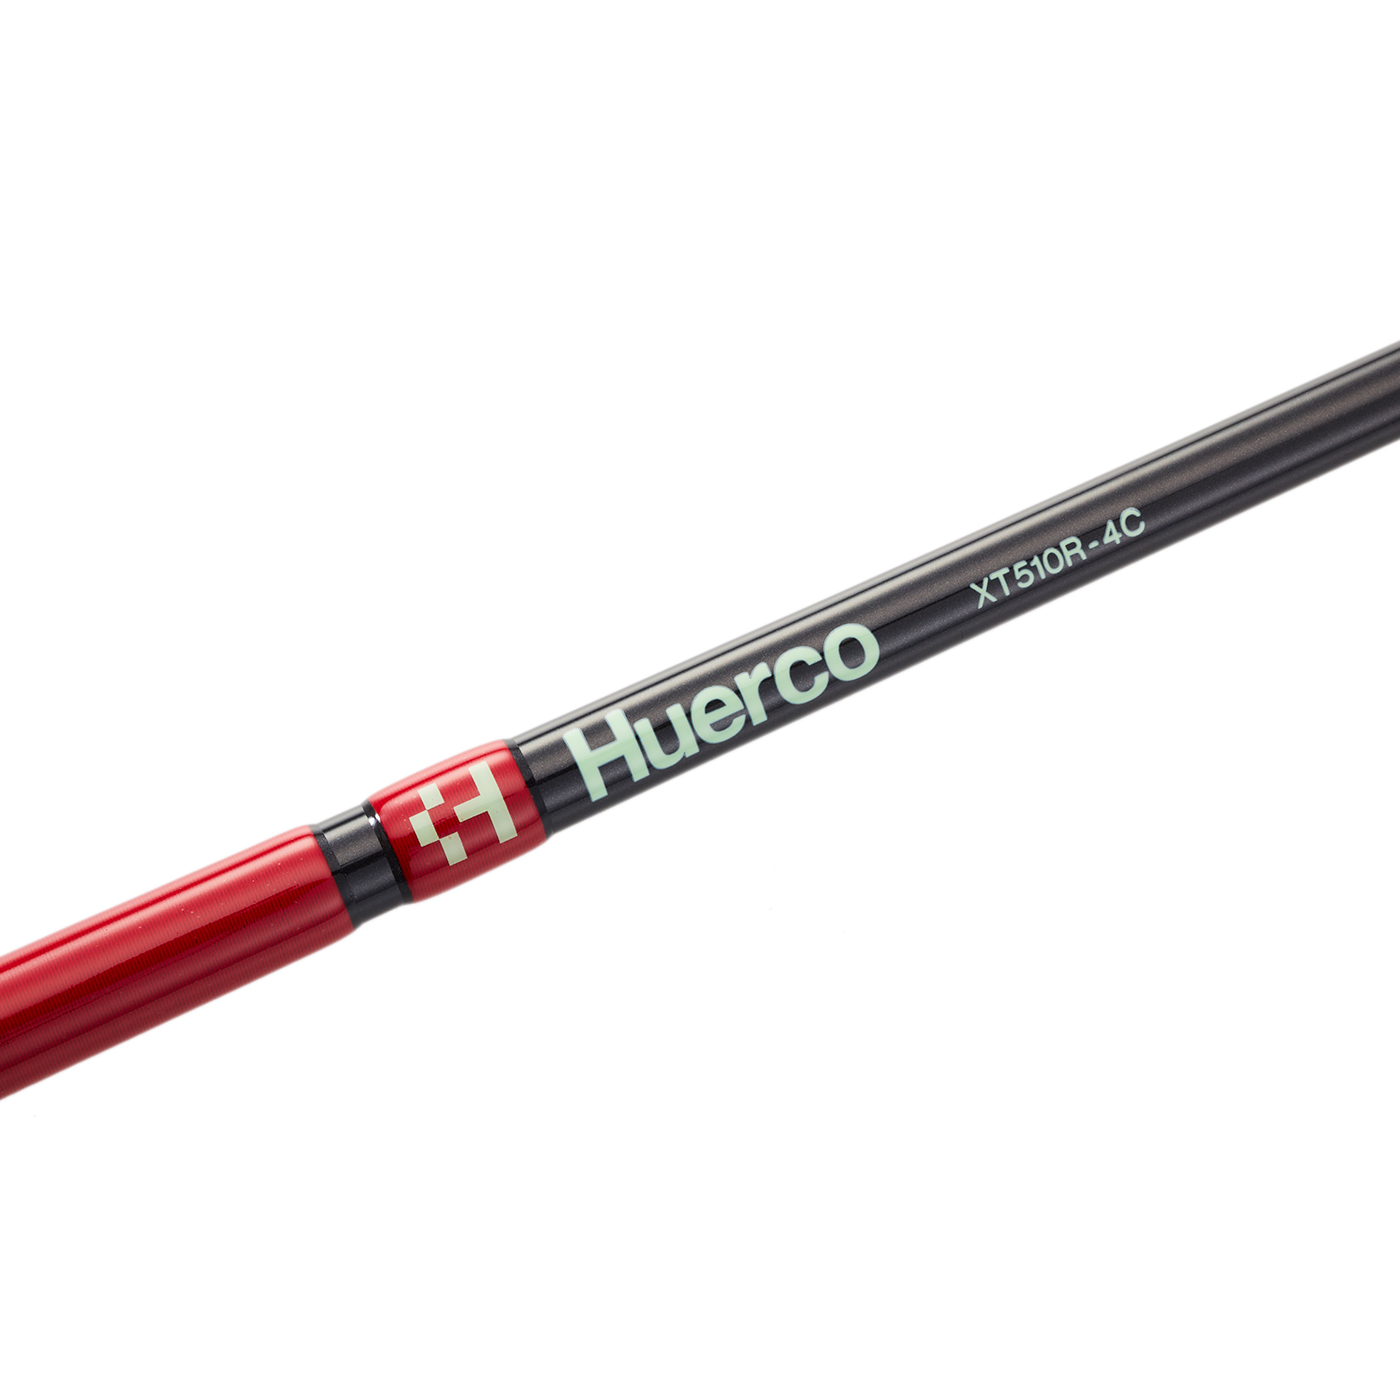 Huerco　フエルコ　XT510R-4C【ベイトモデル / 4pcs】